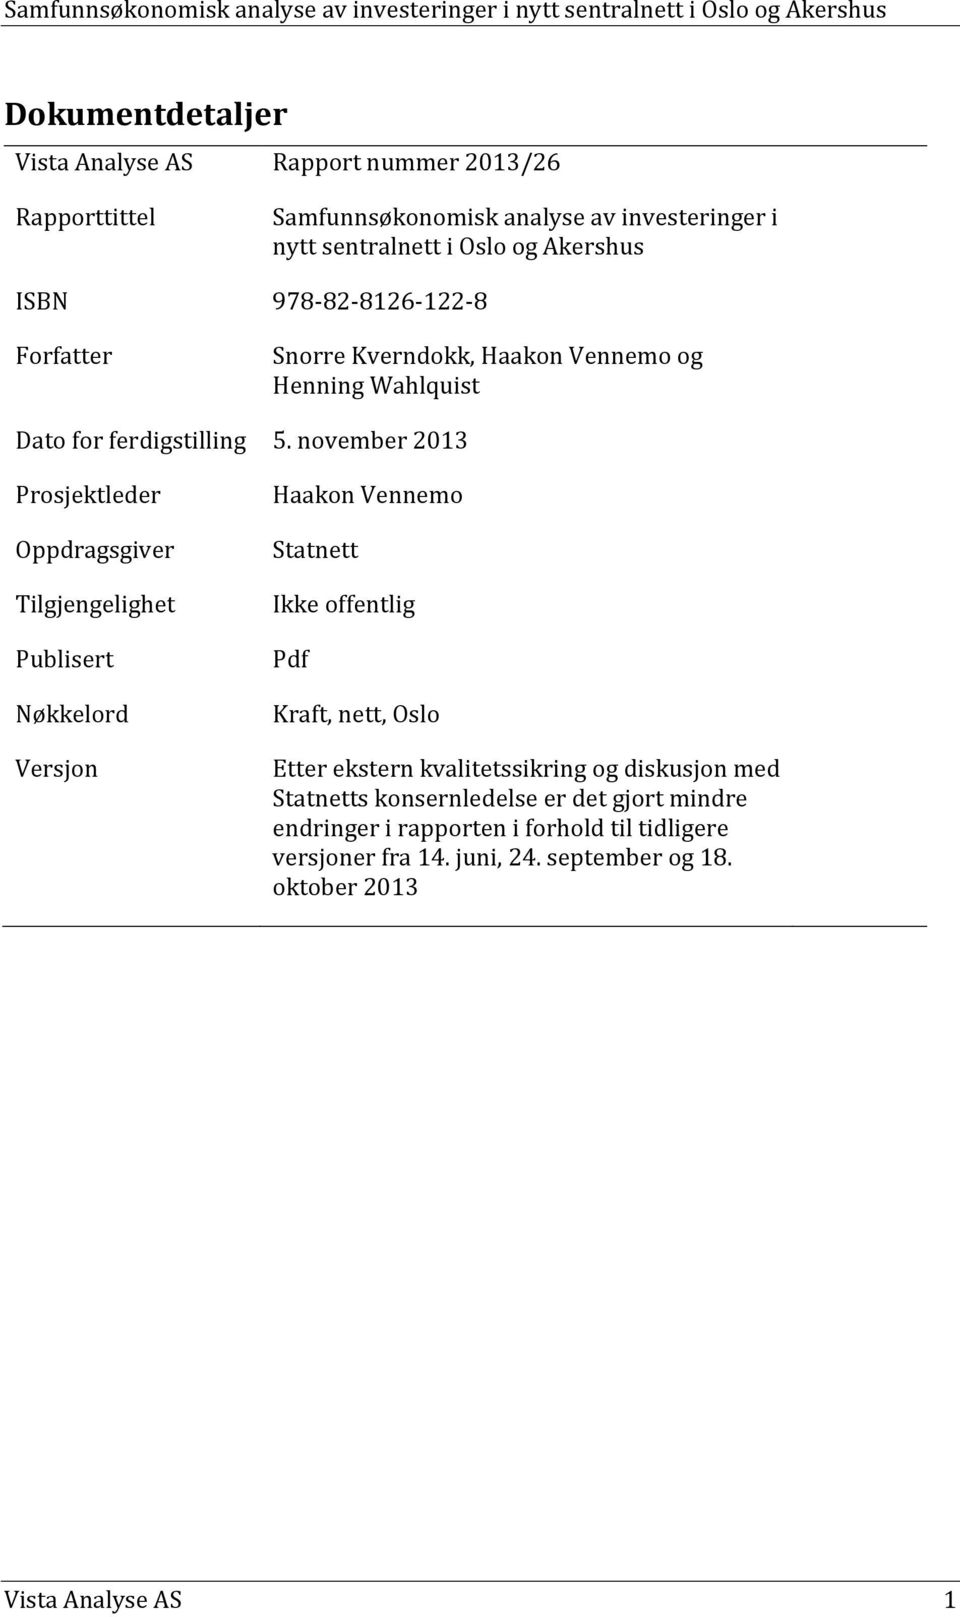 november 2013 Prosjektleder Oppdragsgiver Tilgjengelighet Publisert Nøkkelord Versjon Haakon Vennemo Statnett Ikke offentlig Pdf Kraft, nett, Oslo Etter